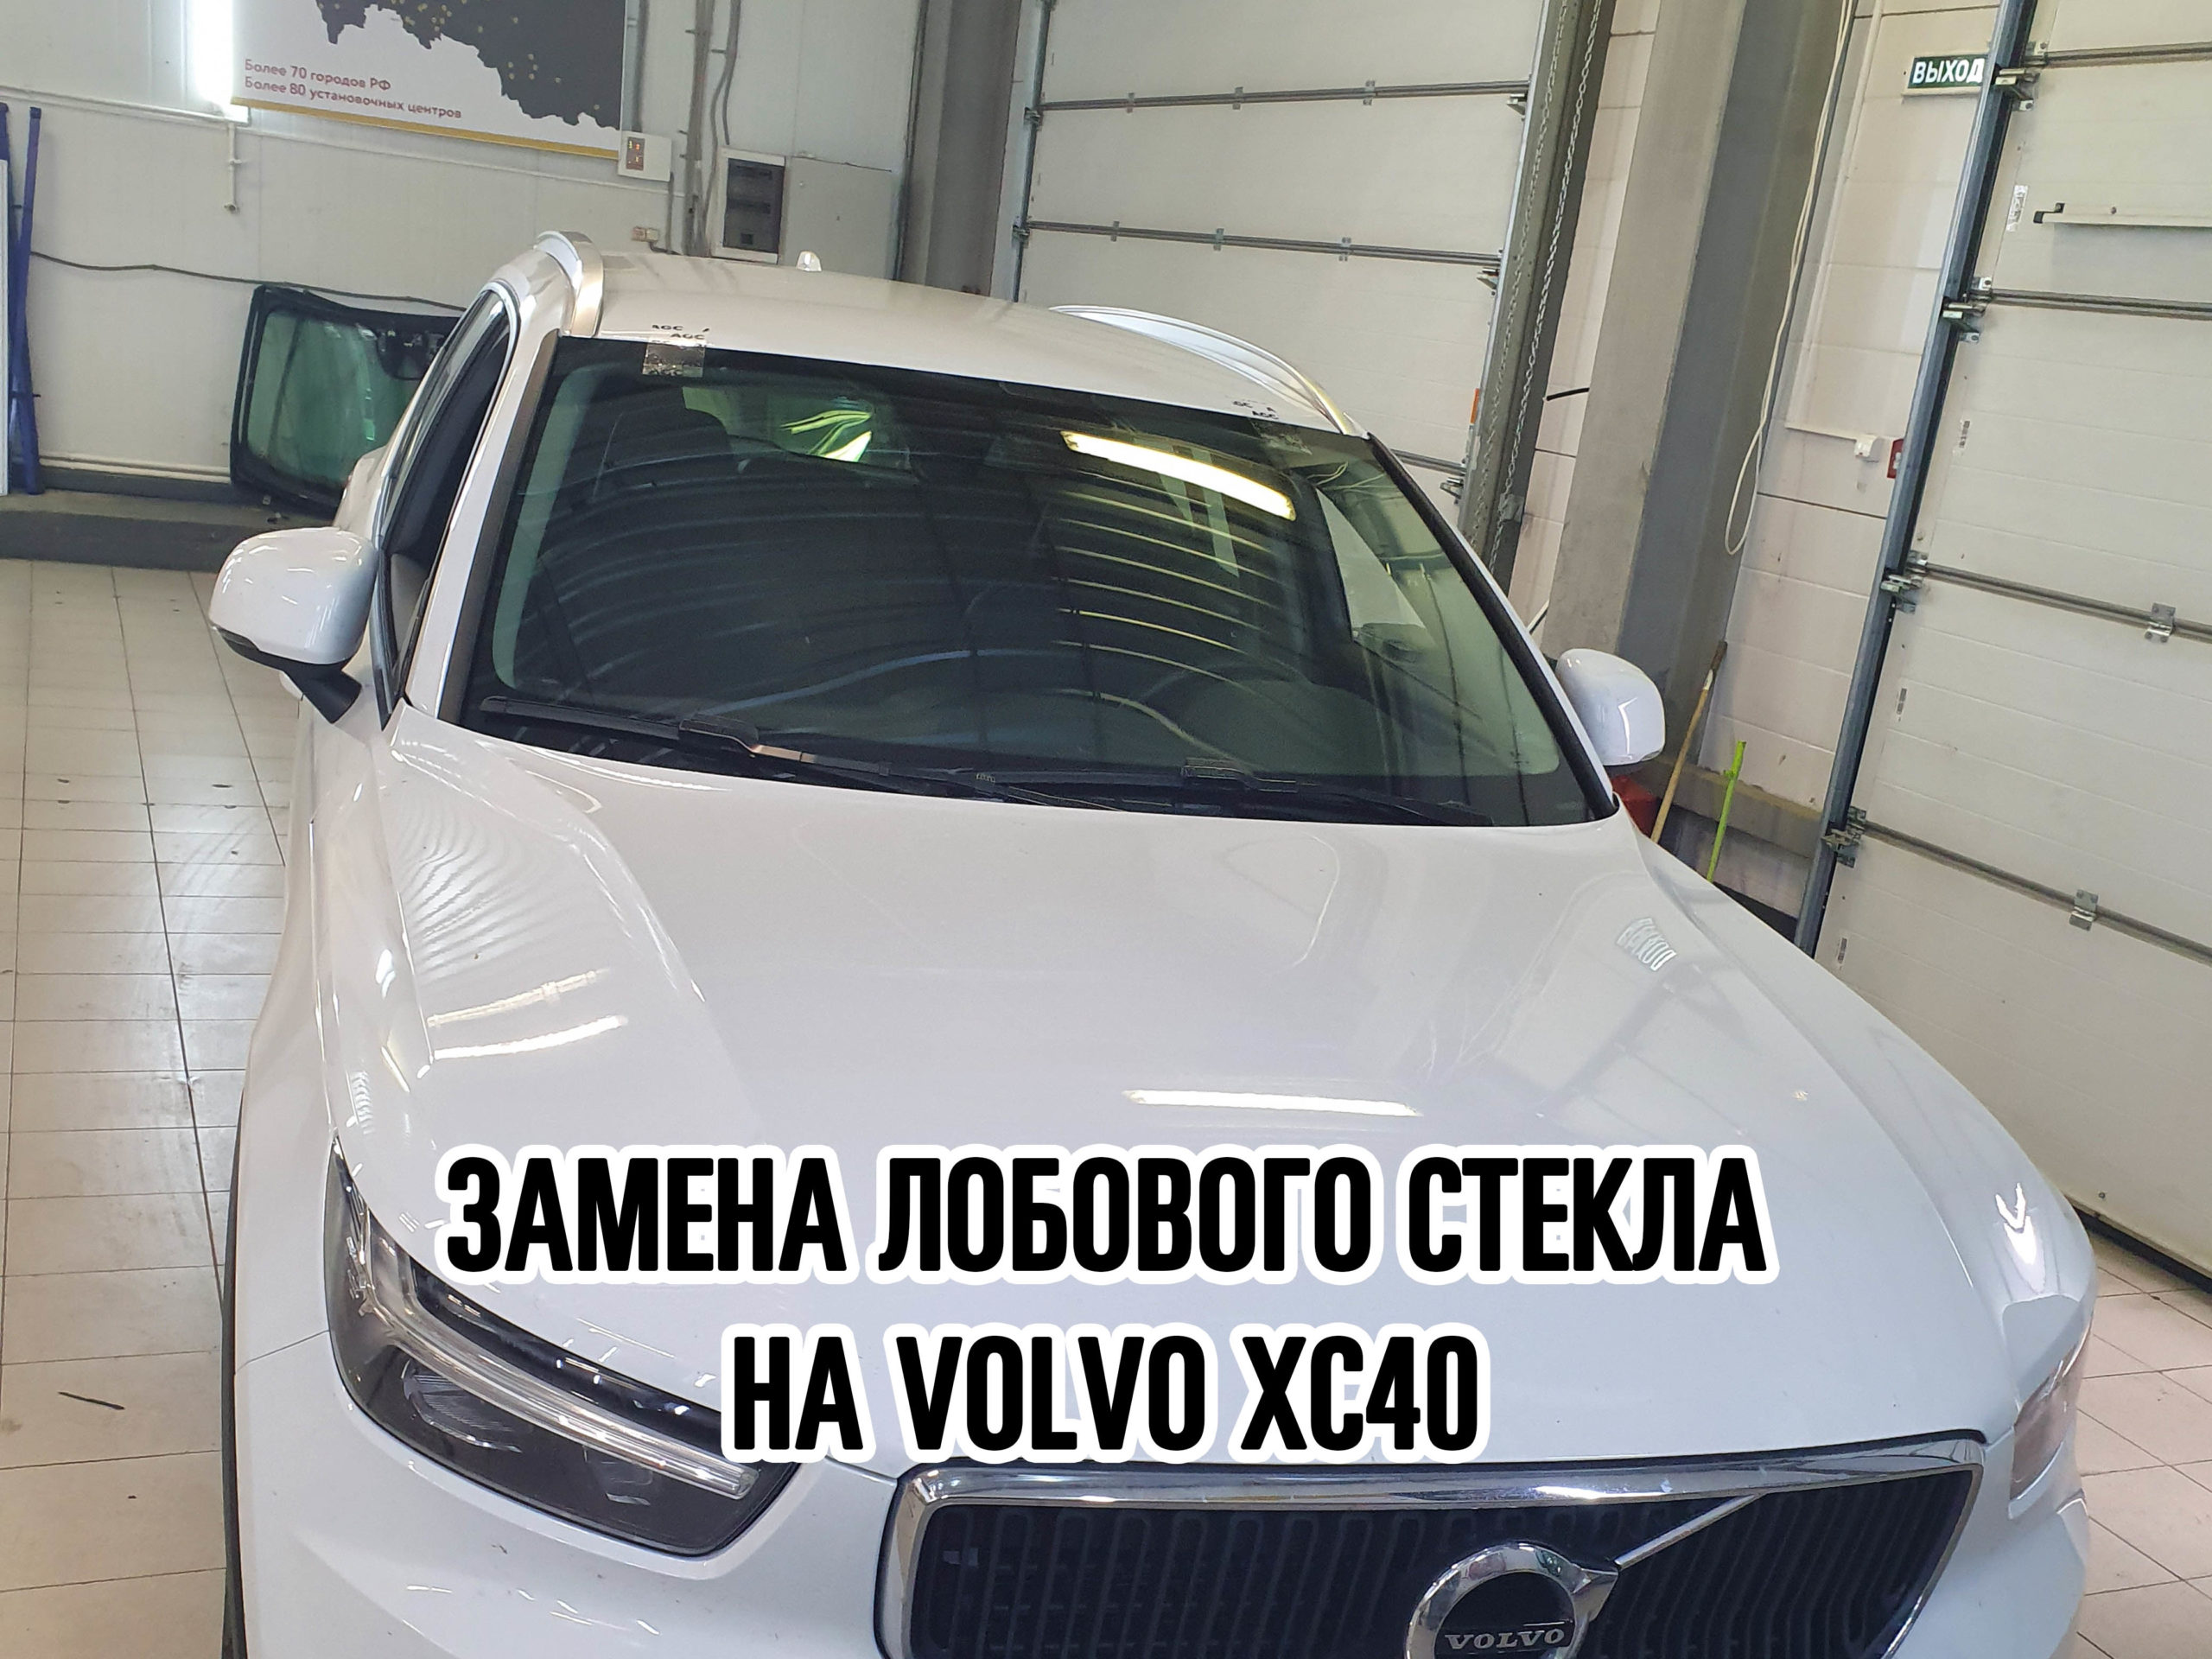 Лобовое стекло на Volvo XC40 купить и установить в Москве